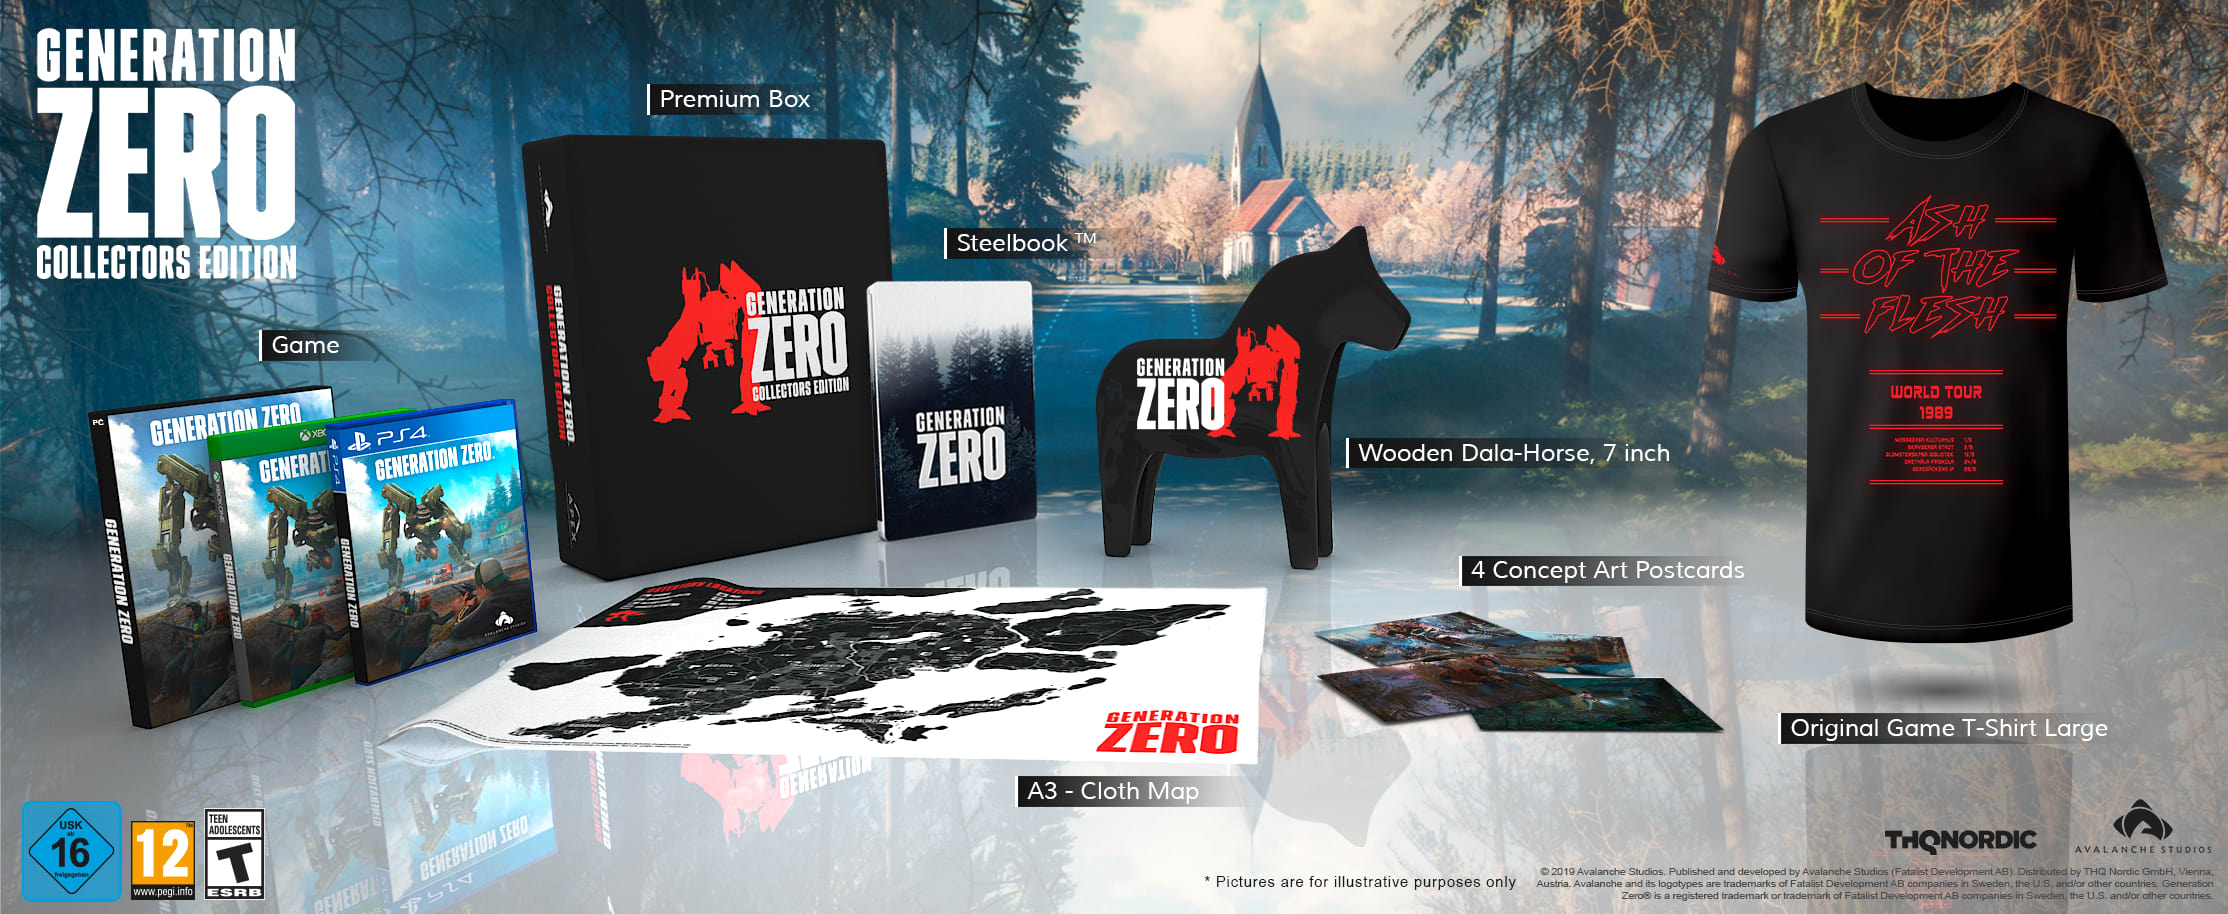 Generation Zero - Collector's Edition (PC), THQ Nordic